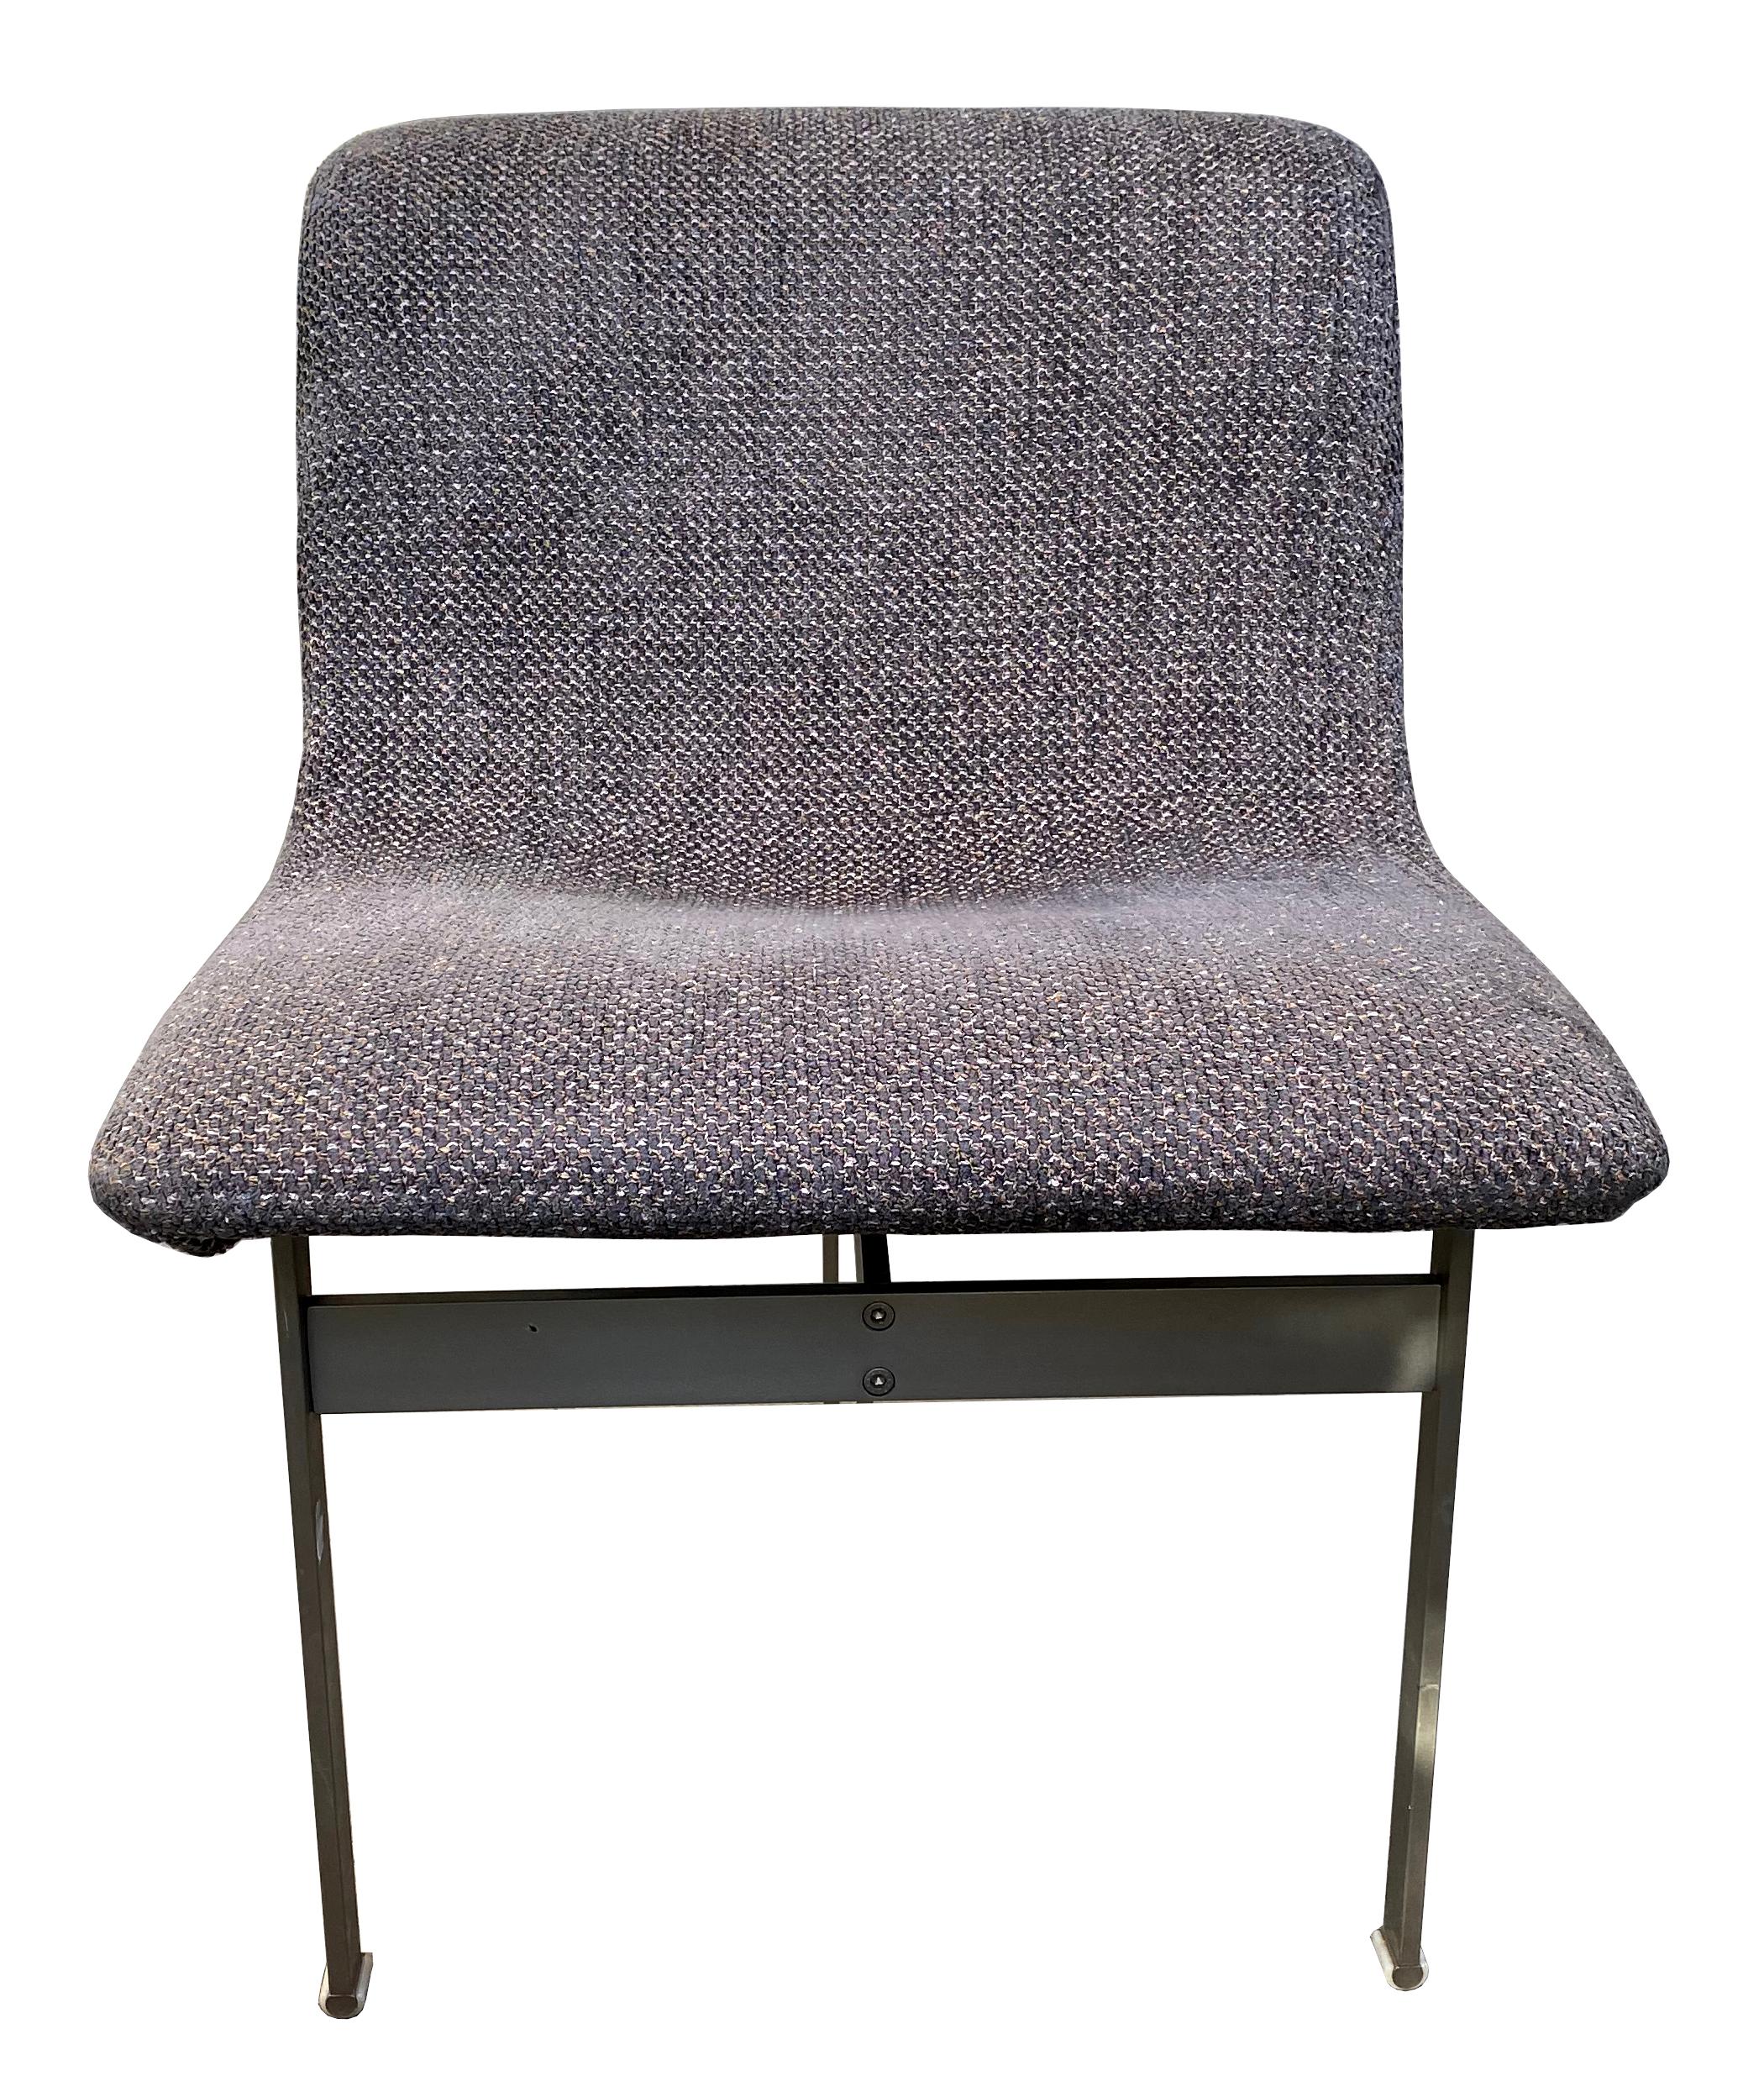 Ein Paar Wave Lounge Chairs von Giovanni Offredi für Saporiti. Saporiti ist seit langem die Avantgarde unter den hochwertigen italienischen Möbelherstellern, und diese Stühle sind keine Ausnahme. Die wellenförmigen Sitze stehen auf massiven Sockeln